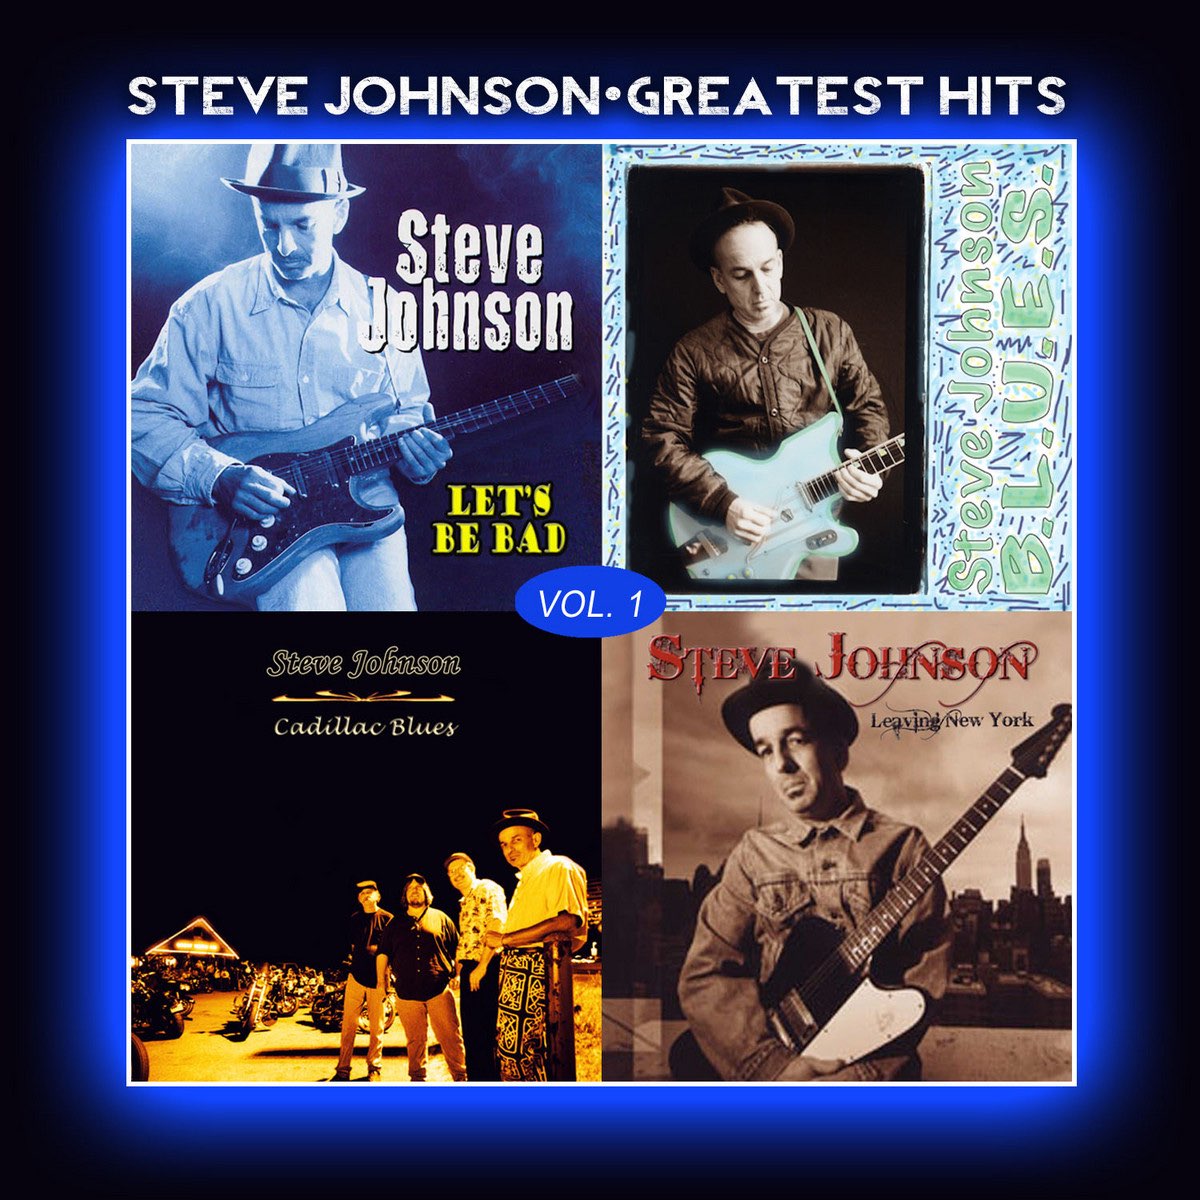 Steve Johnson - Greatest Hits, Vol. 1 by Steve Johnson on Apple Music